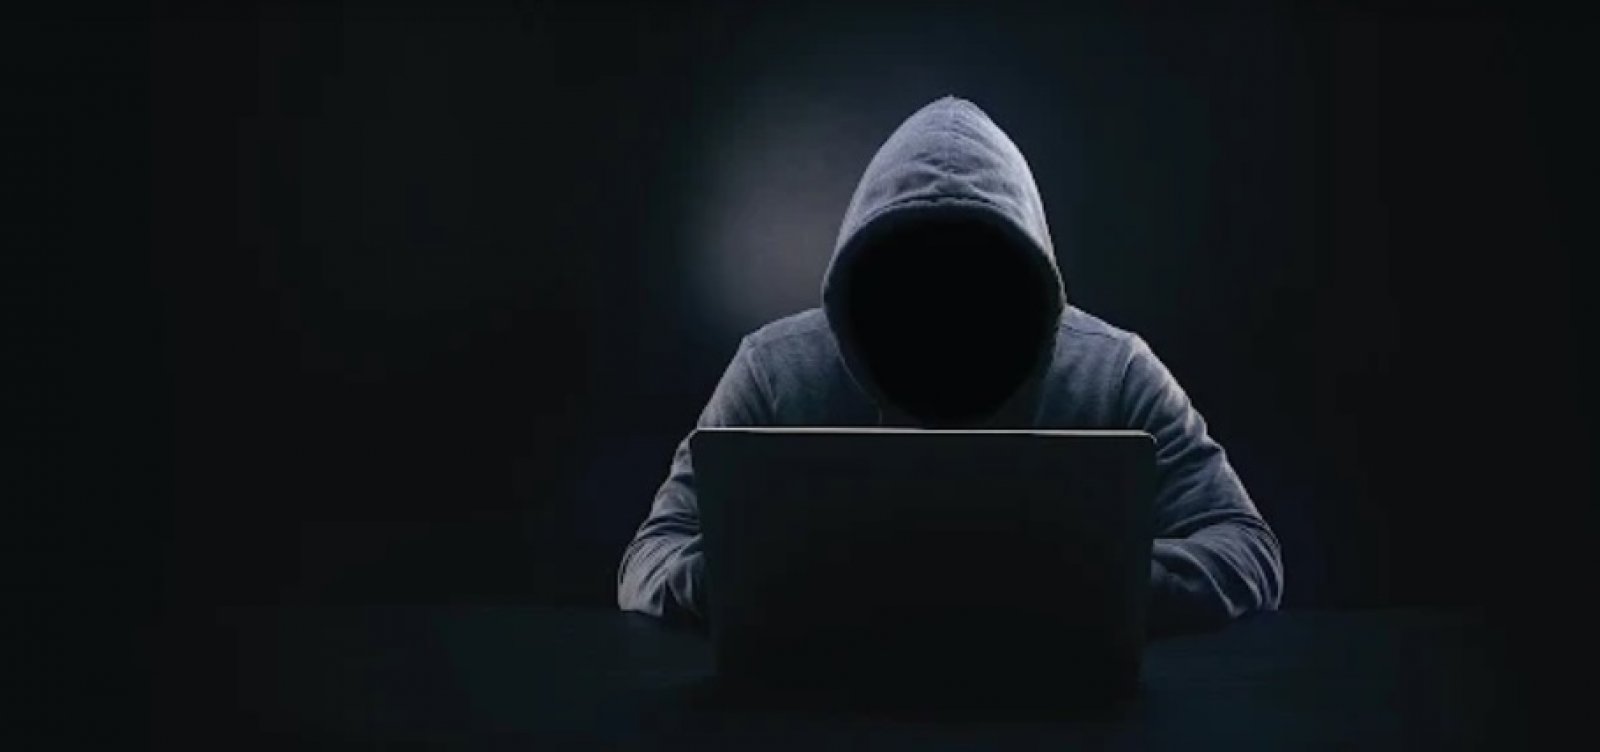 Invasão de hackers a páginas governamentais é estratégia eleitoral, apontam especialistas